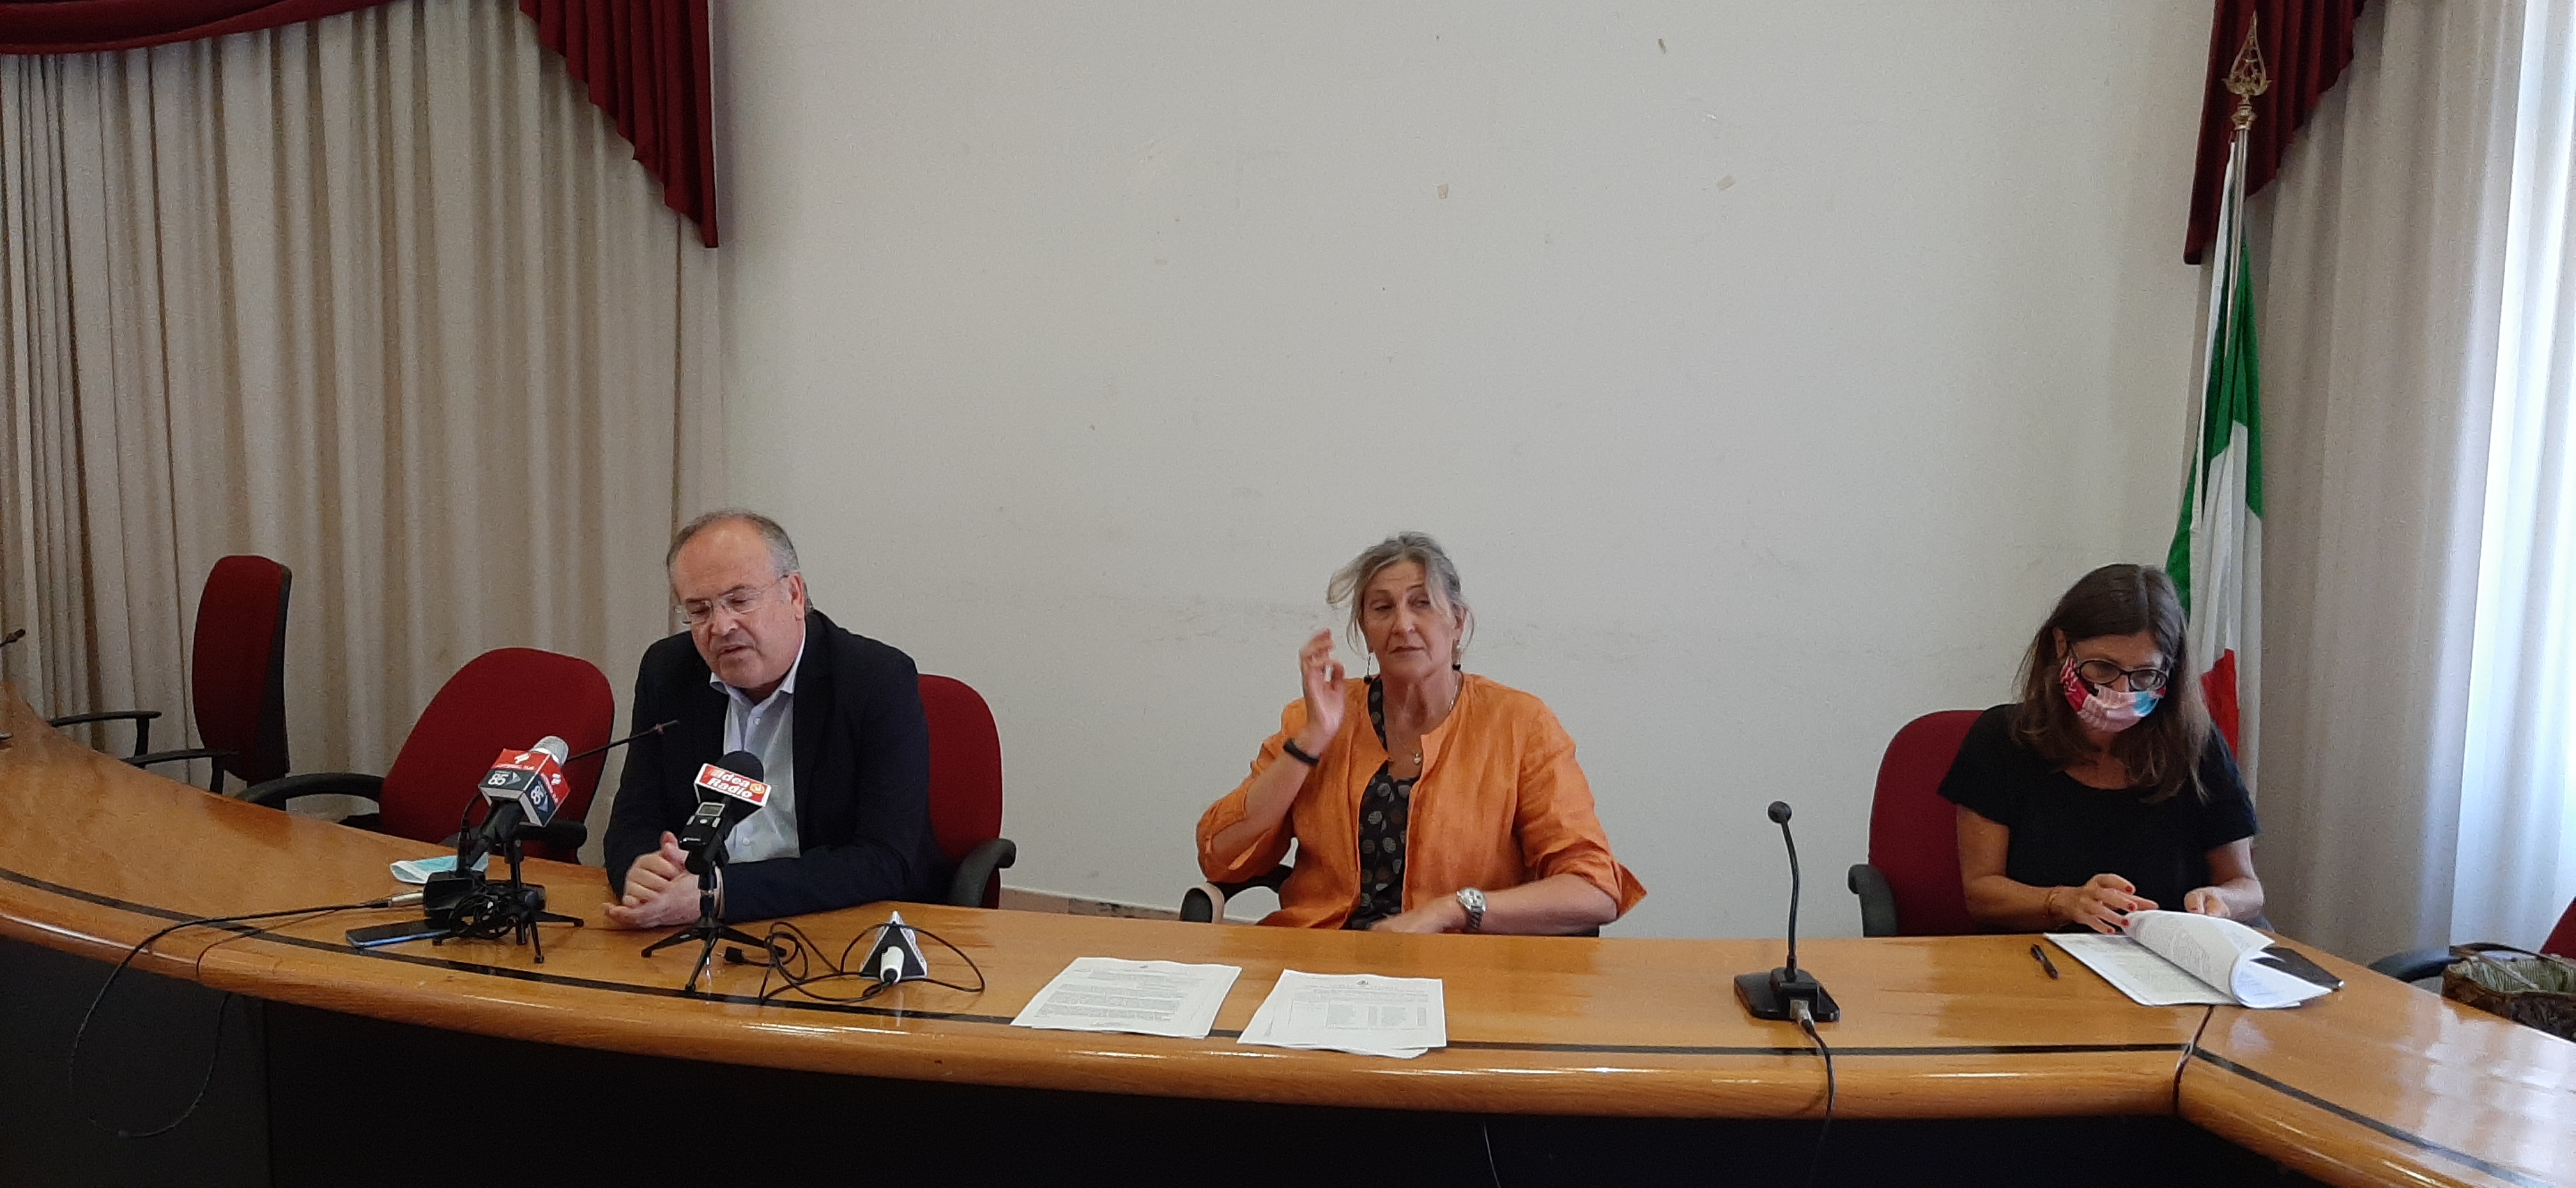 Riva Destra sul porto: “Stupiti dalla conferenza stampa del sindaco”